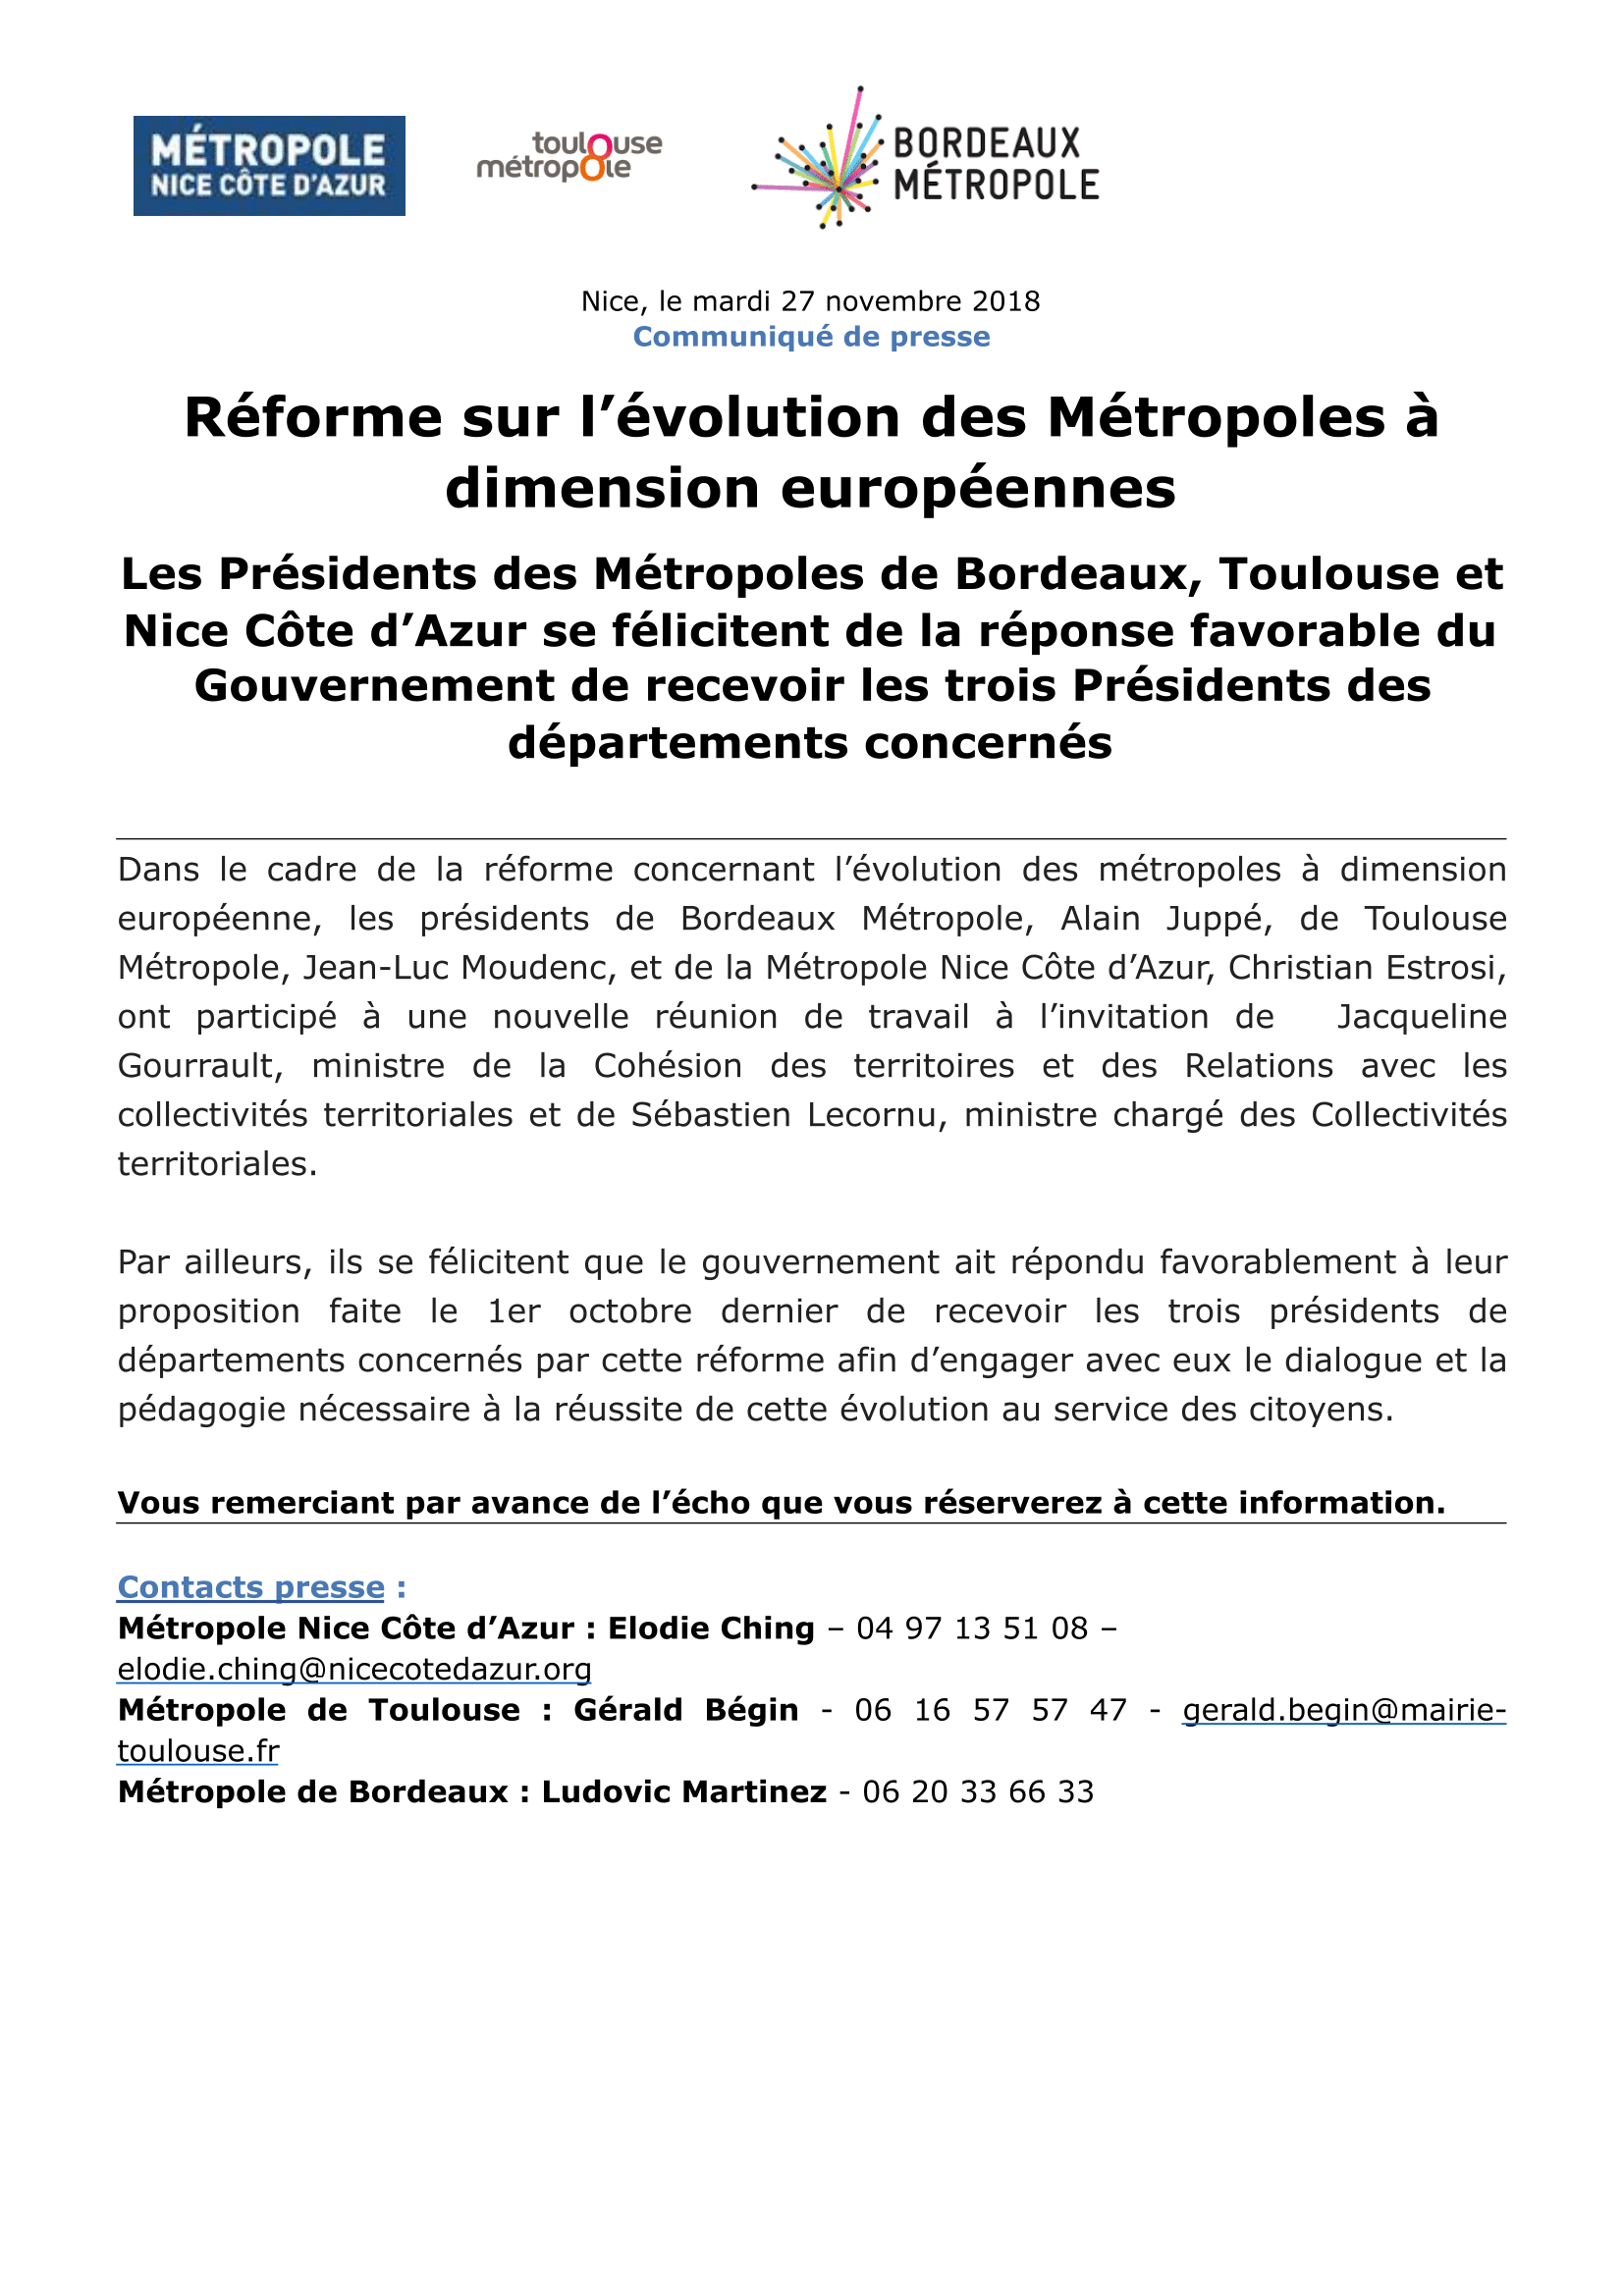 reforme-sur-levolution-des-metropoles-a-dimension-europeenne-1